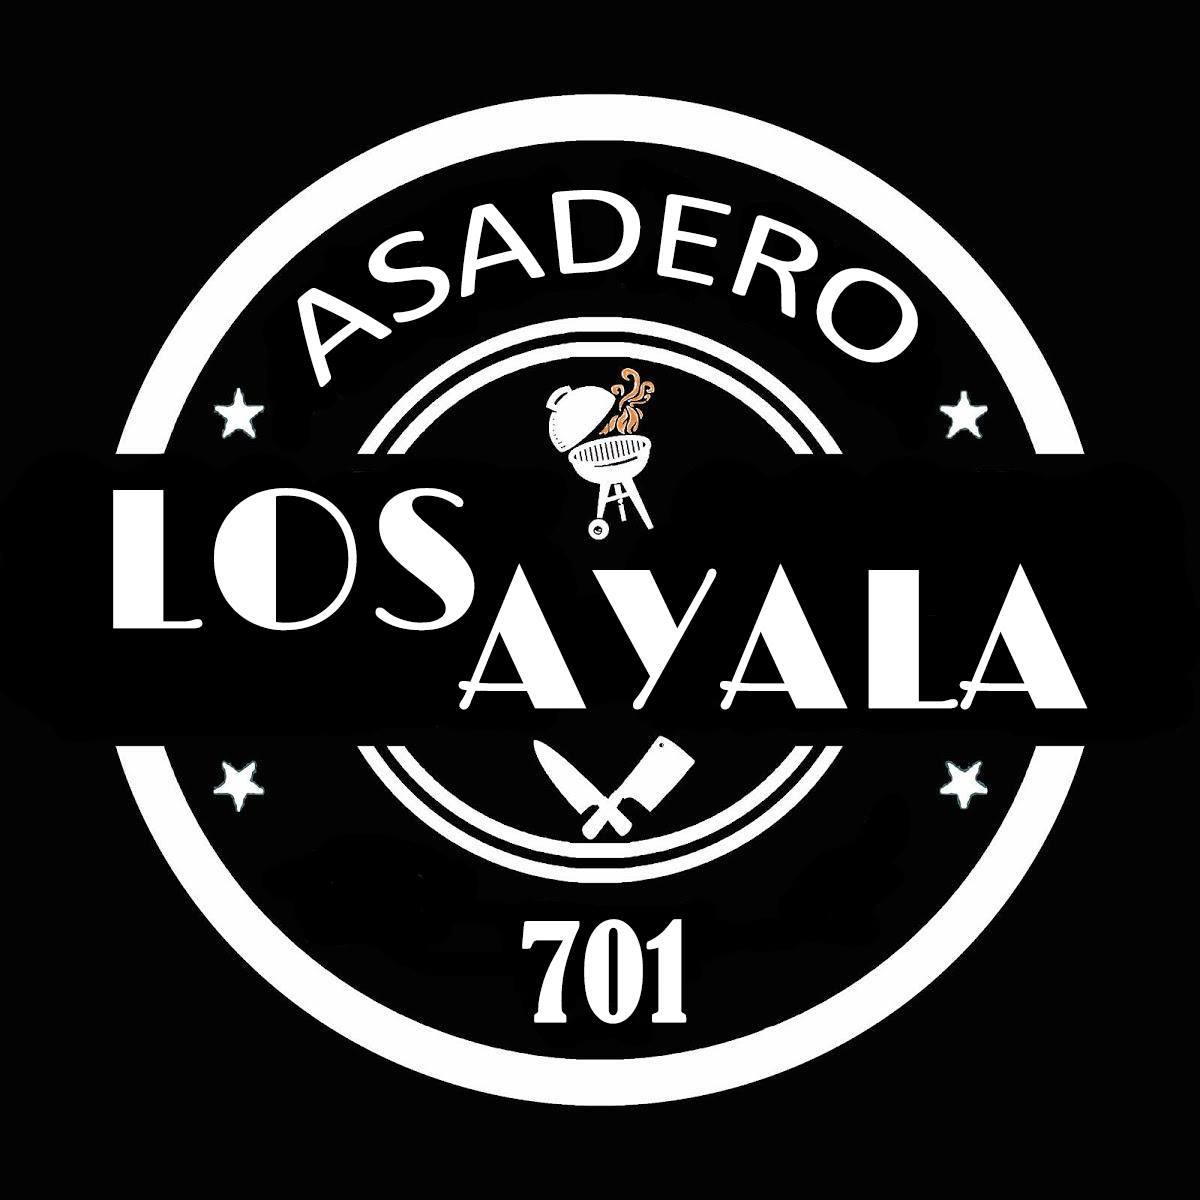 Asadero Los Ayala